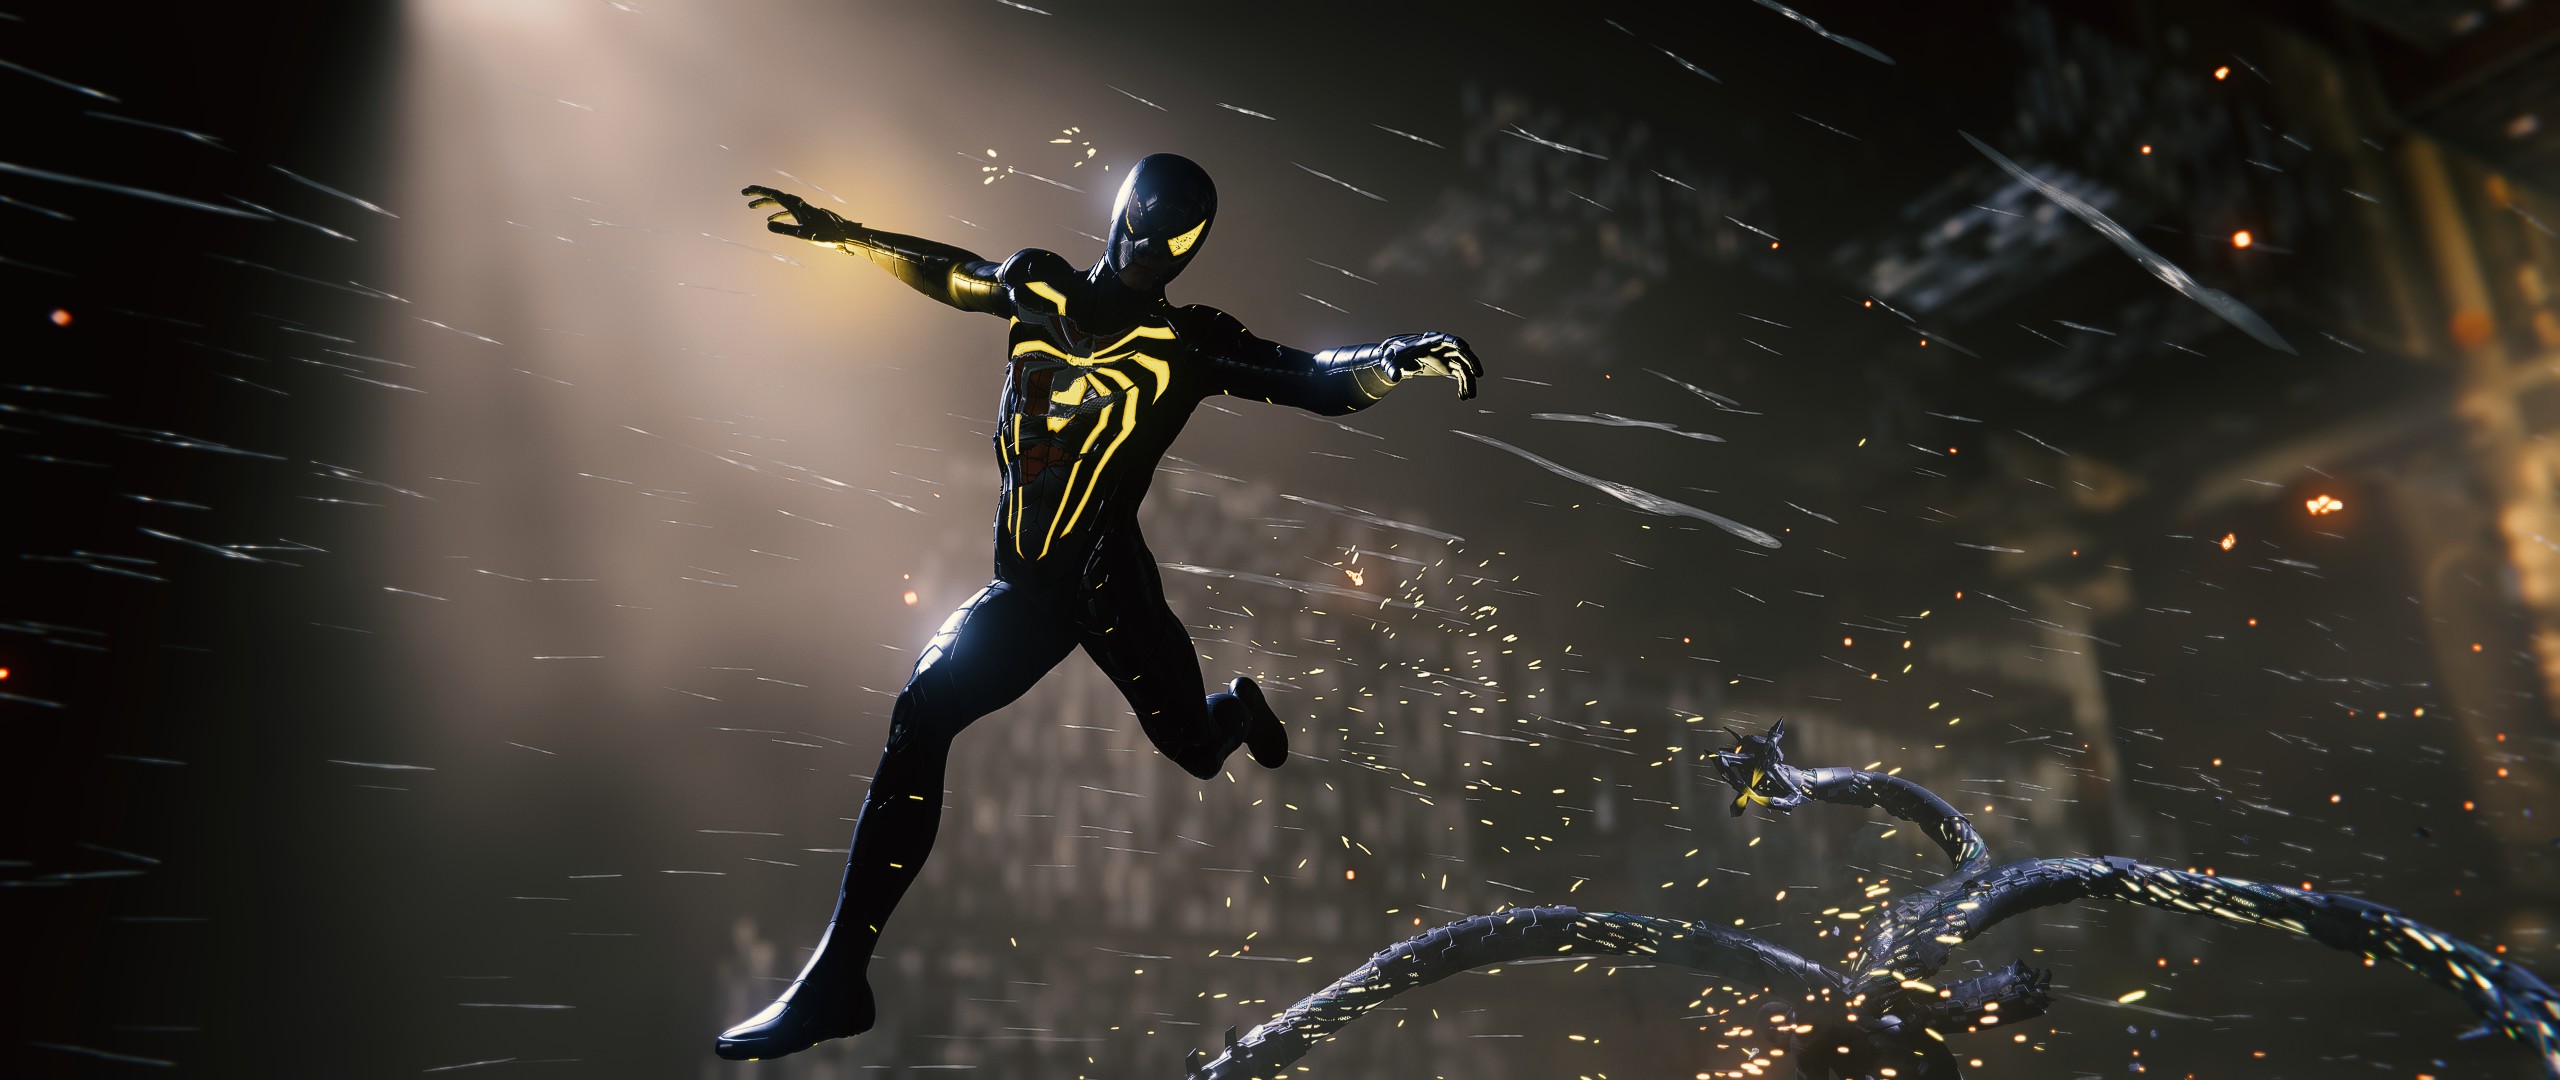 Spider-Man Remastered PC Anti OCK Suit